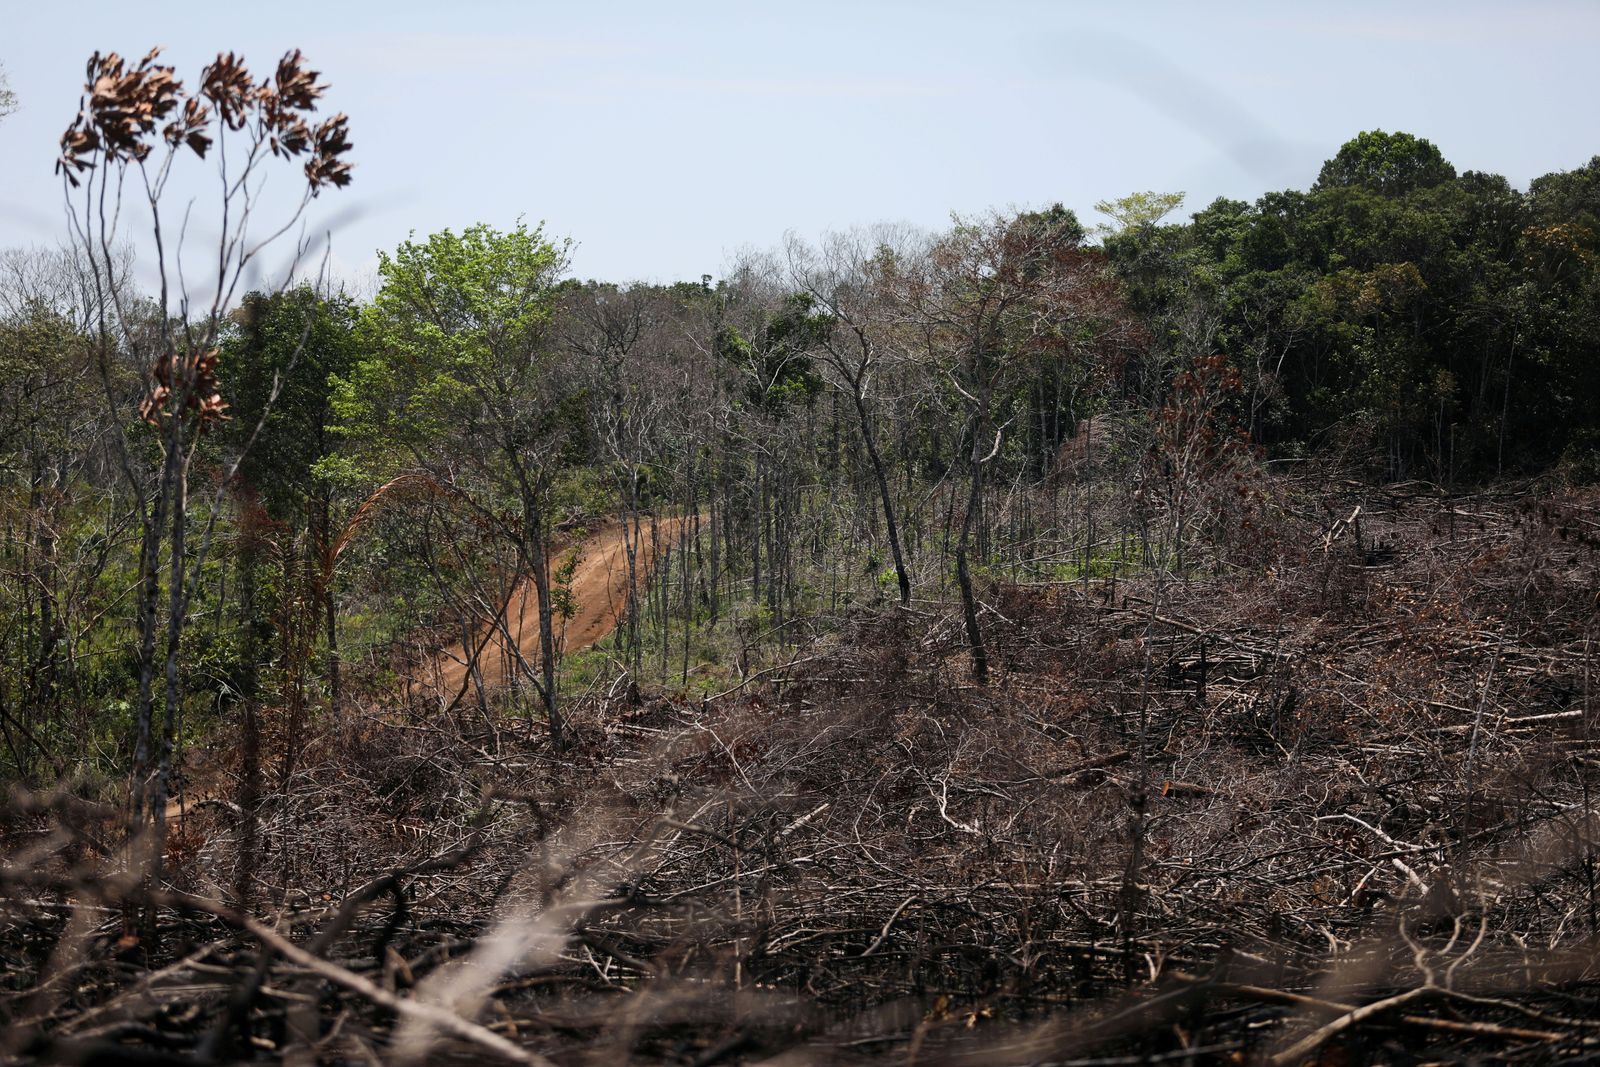 إزالة غابات في وسط سهول ياري بكولومبيا - 2 مارس 2021 - REUTERS